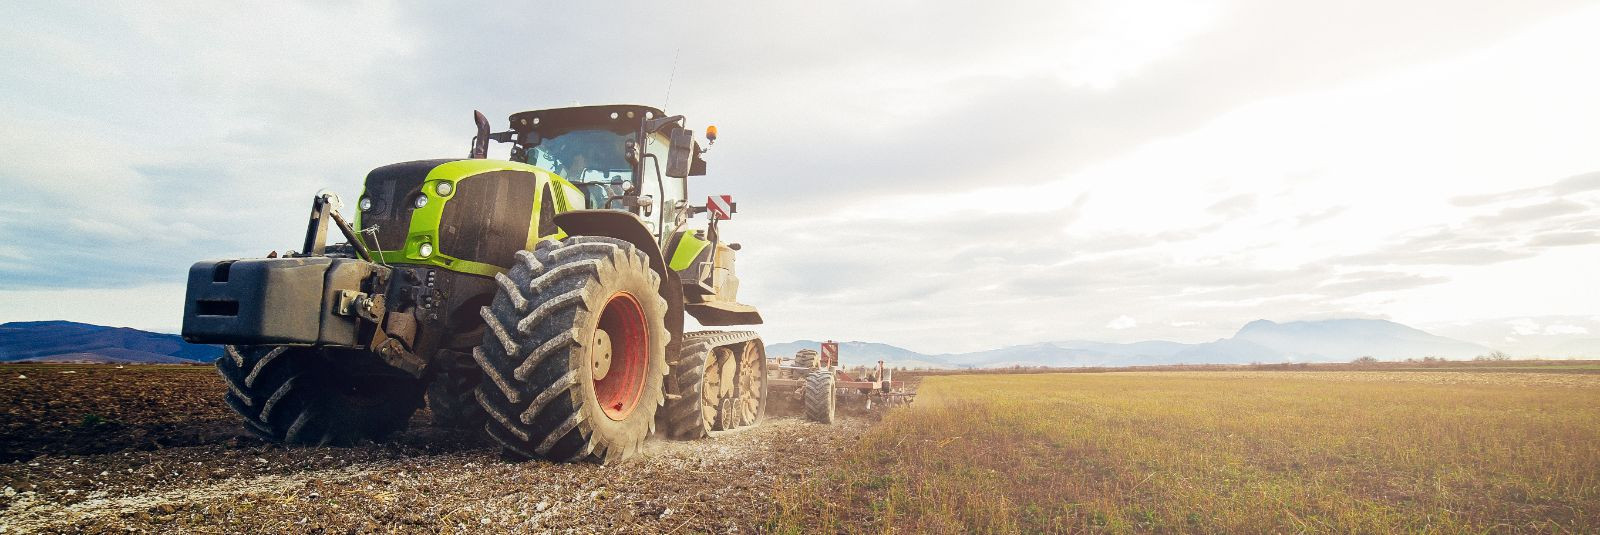 Traktorid on põllumajanduse ja maatööde oluline osa, võimaldades ...